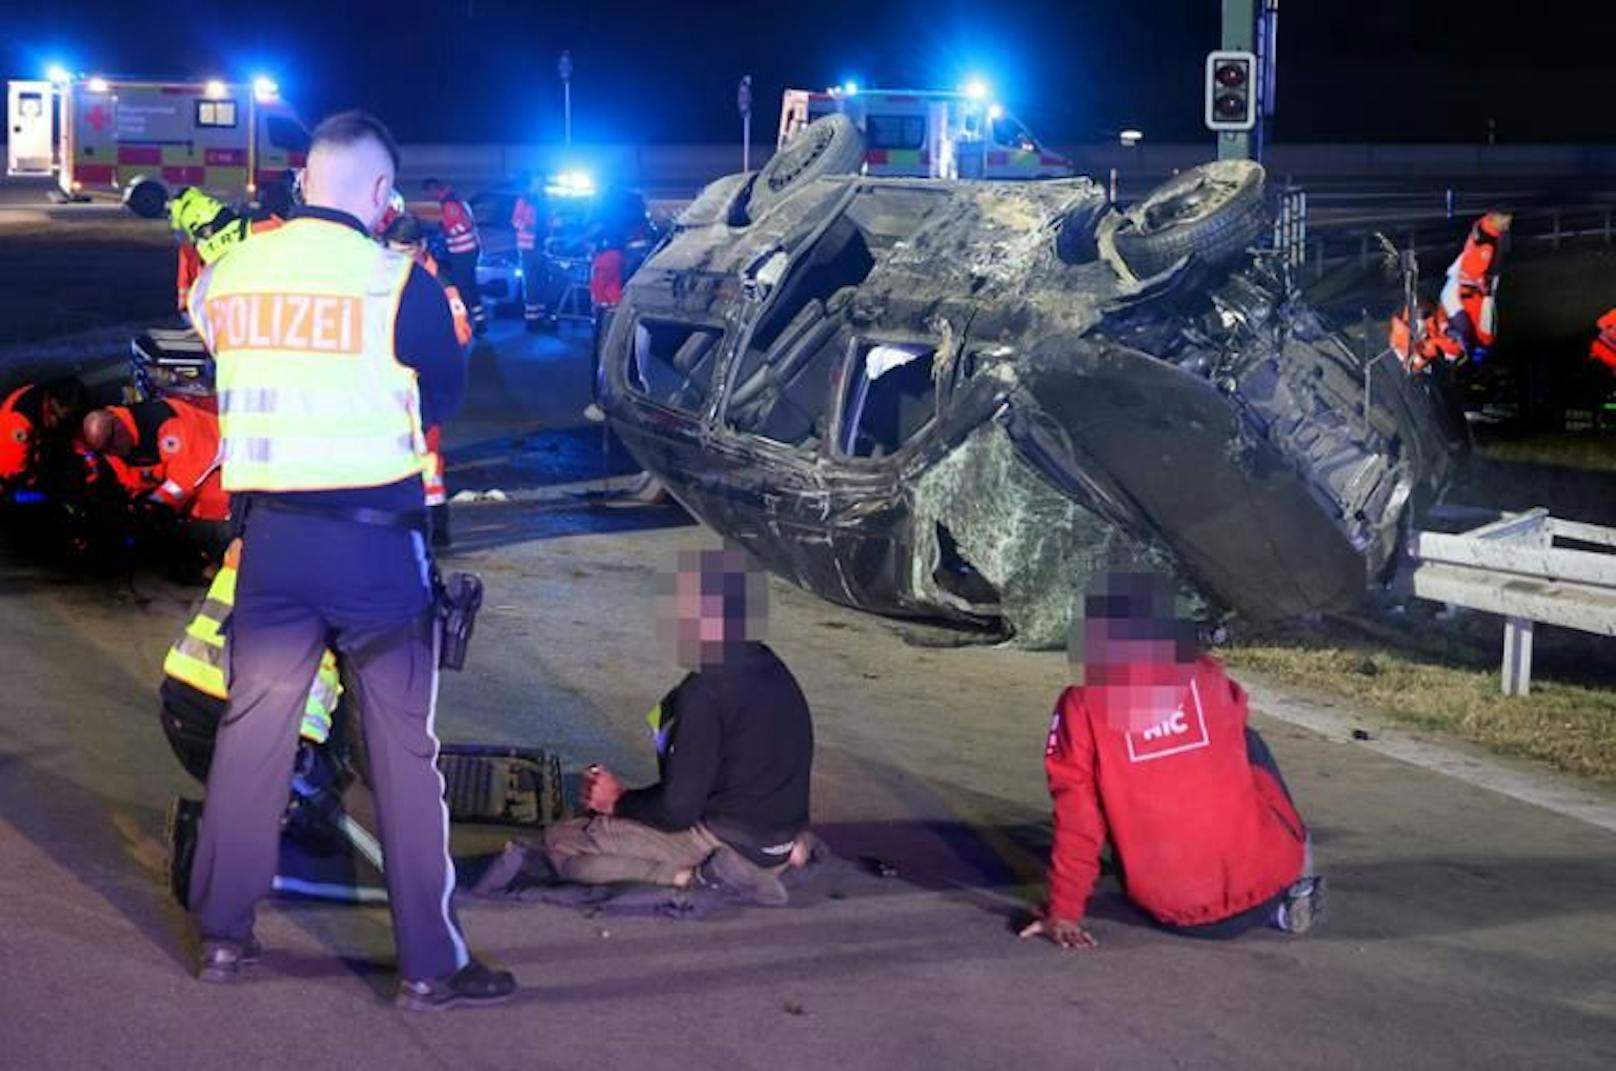 Der Schlepper aus Wien hatte beim Unfall auf der Flucht über 20 Personen im Auto, auch Kinder. Mindestens sieben davon sind gestorben.